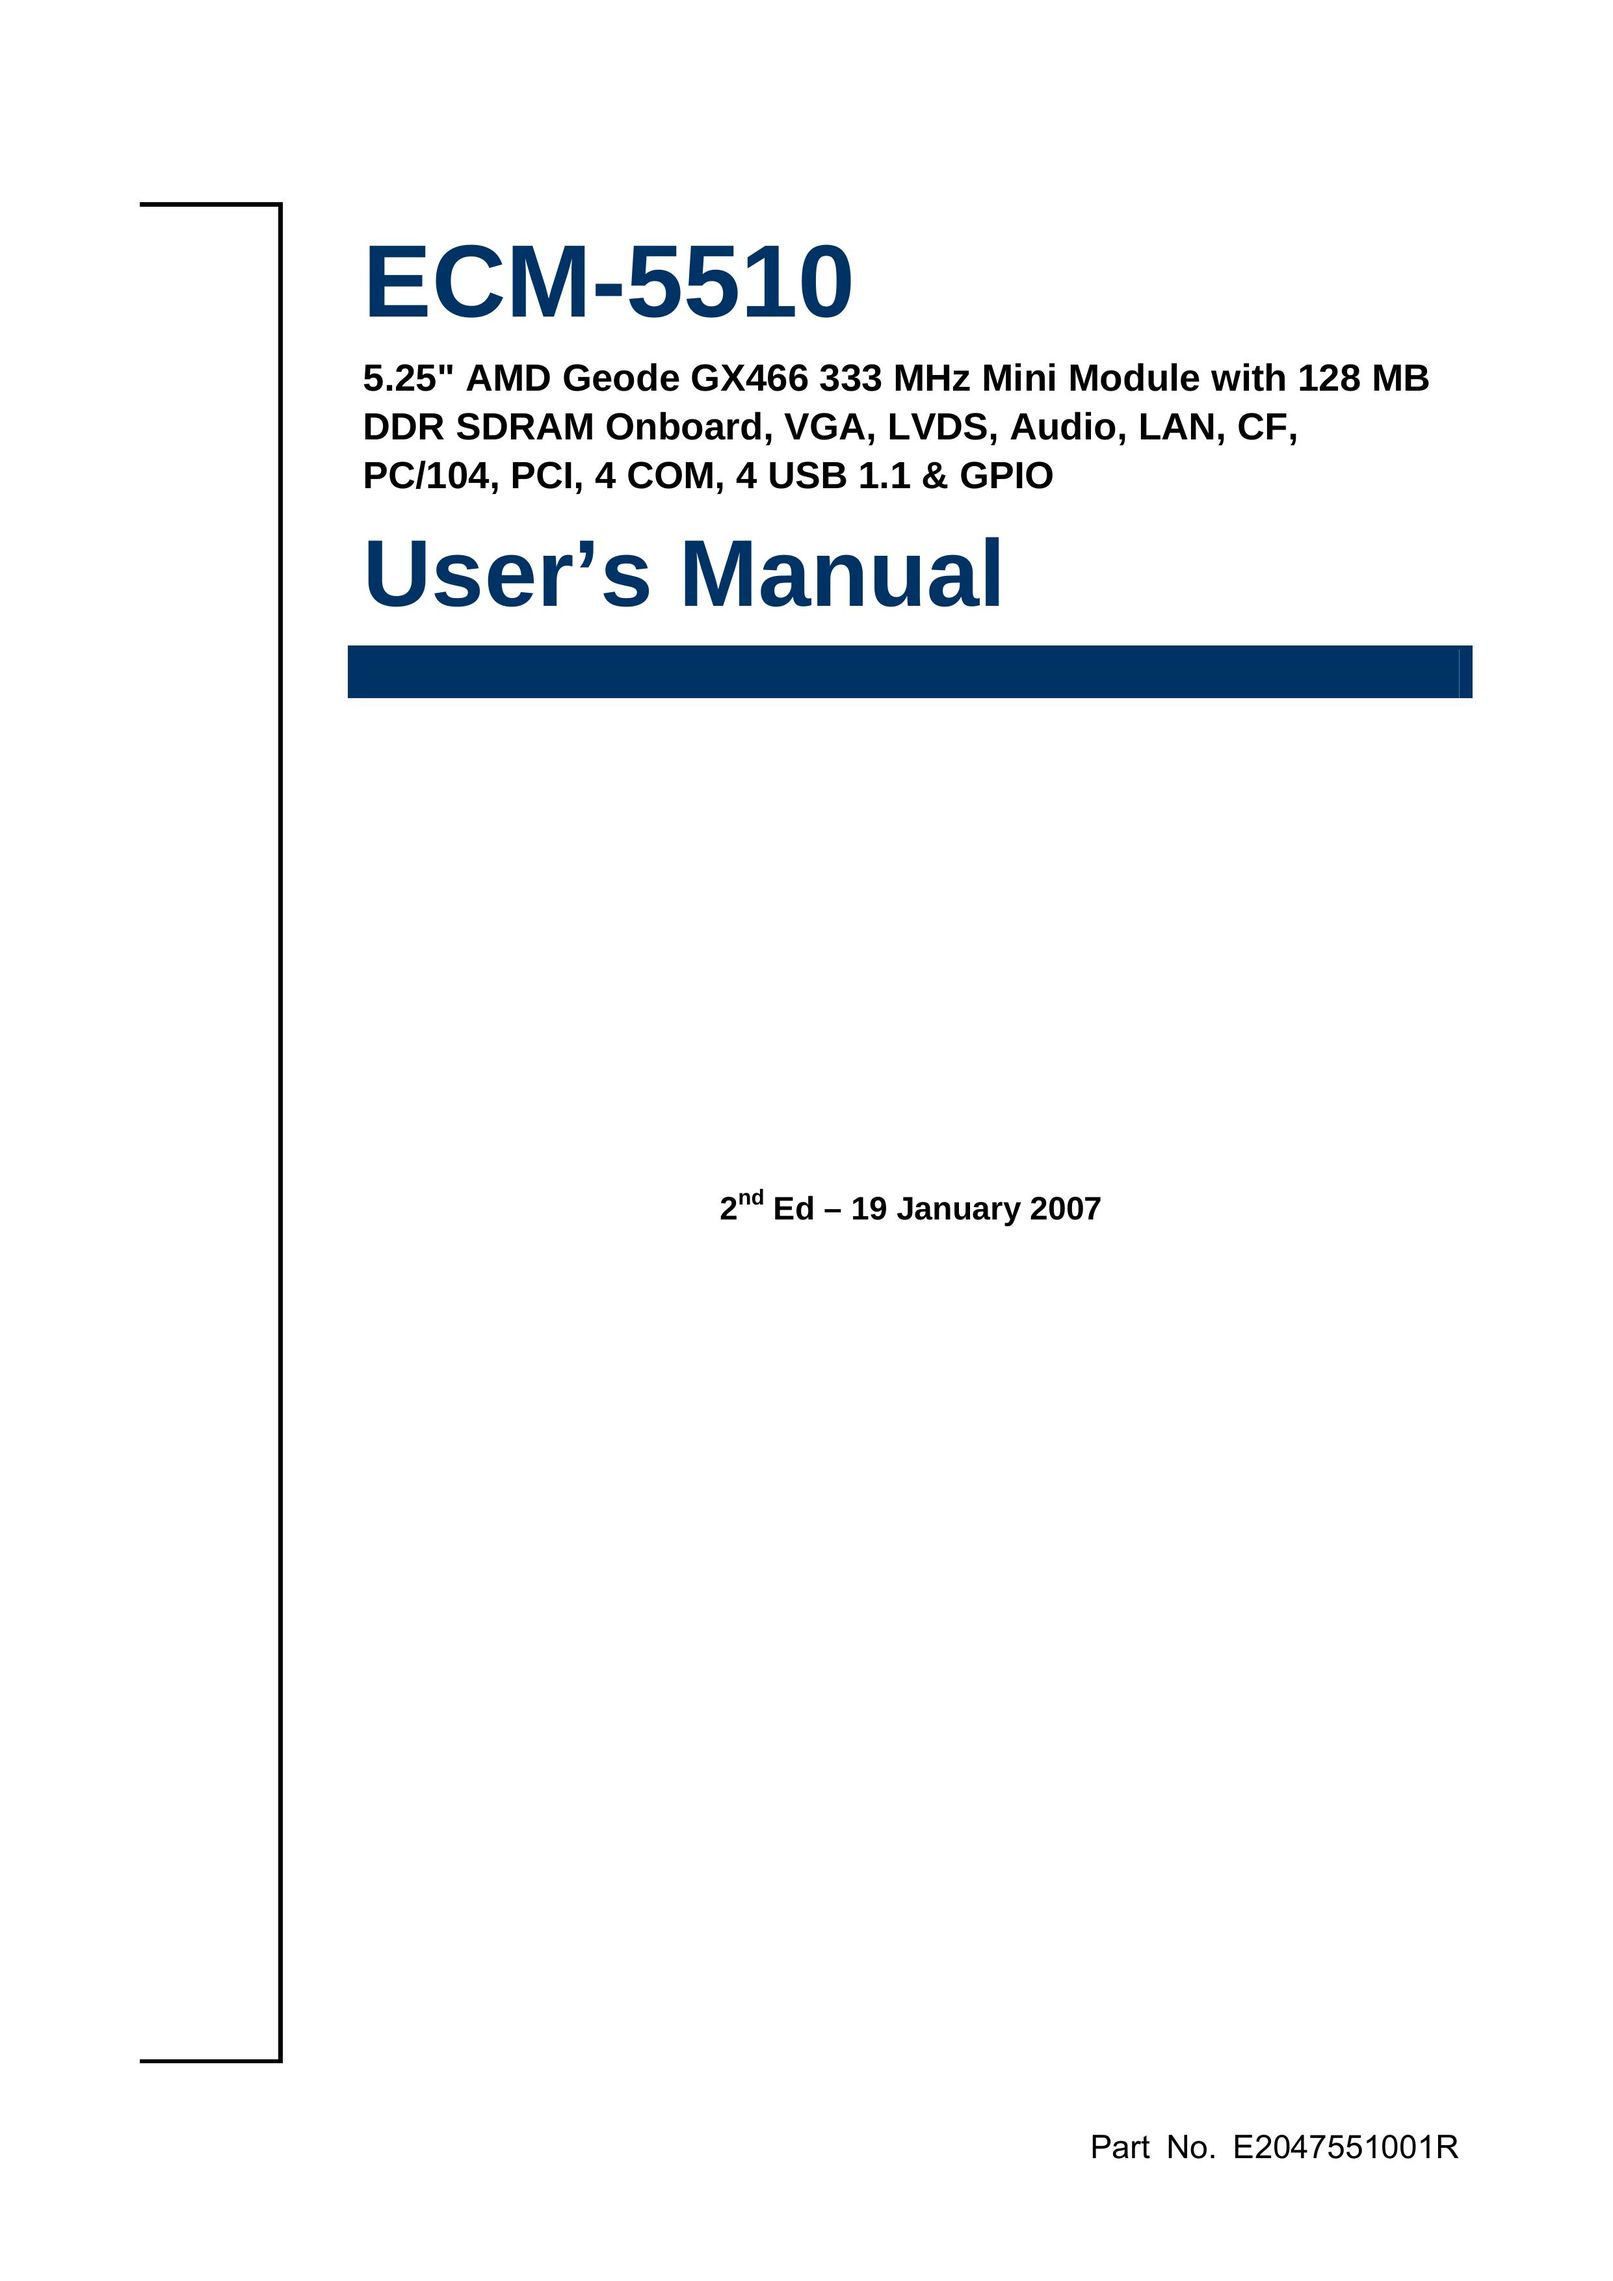 HP (Hewlett-Packard) ECM-5510 Computer Hardware User Manual